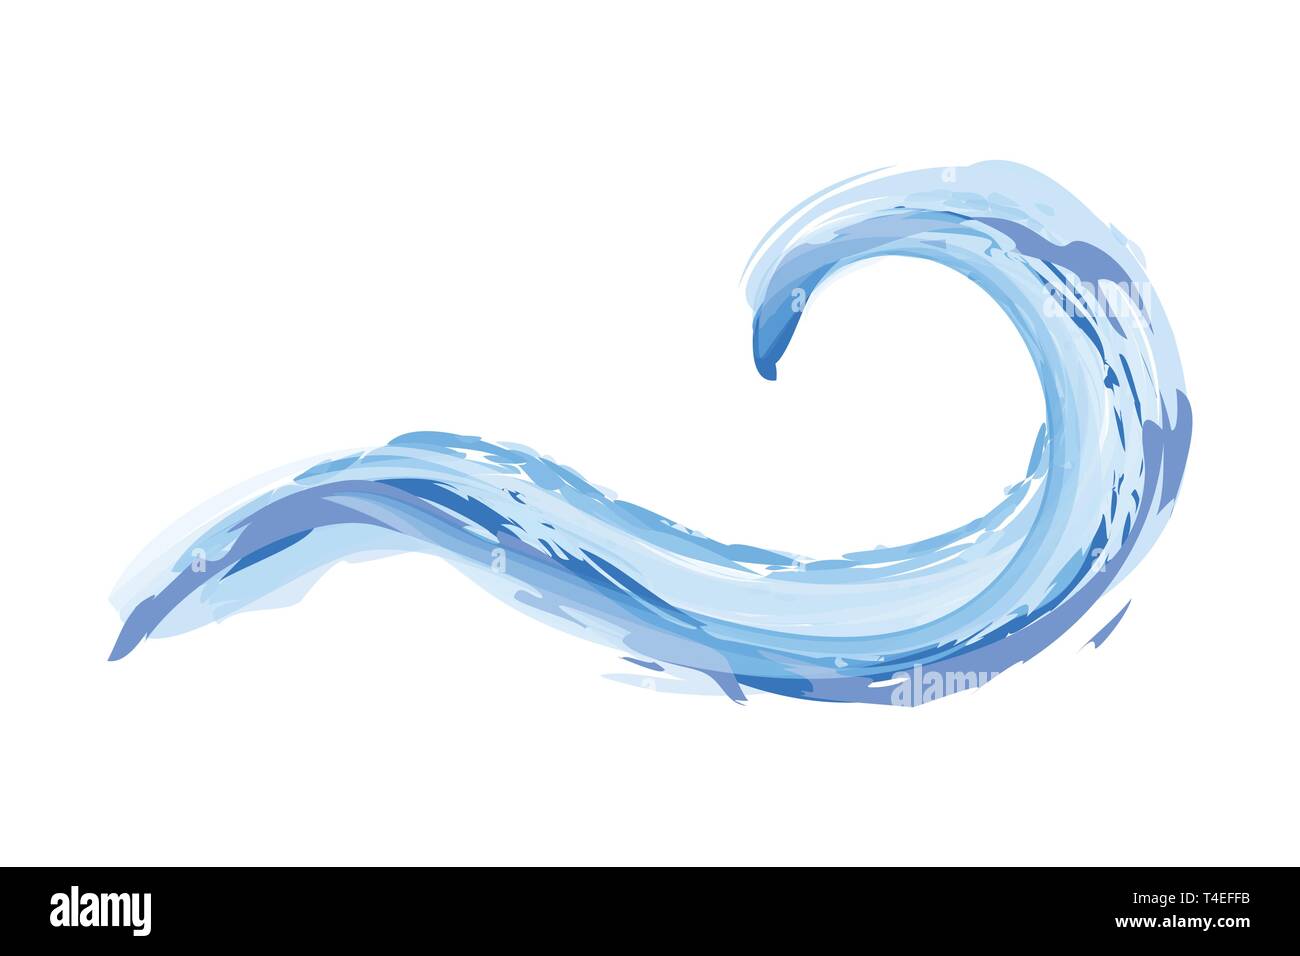 Abstrakt Blau Wasser Welle Symbol auf weißem Hintergrund Vektor-illustration EPS 10 isoliert Stock Vektor